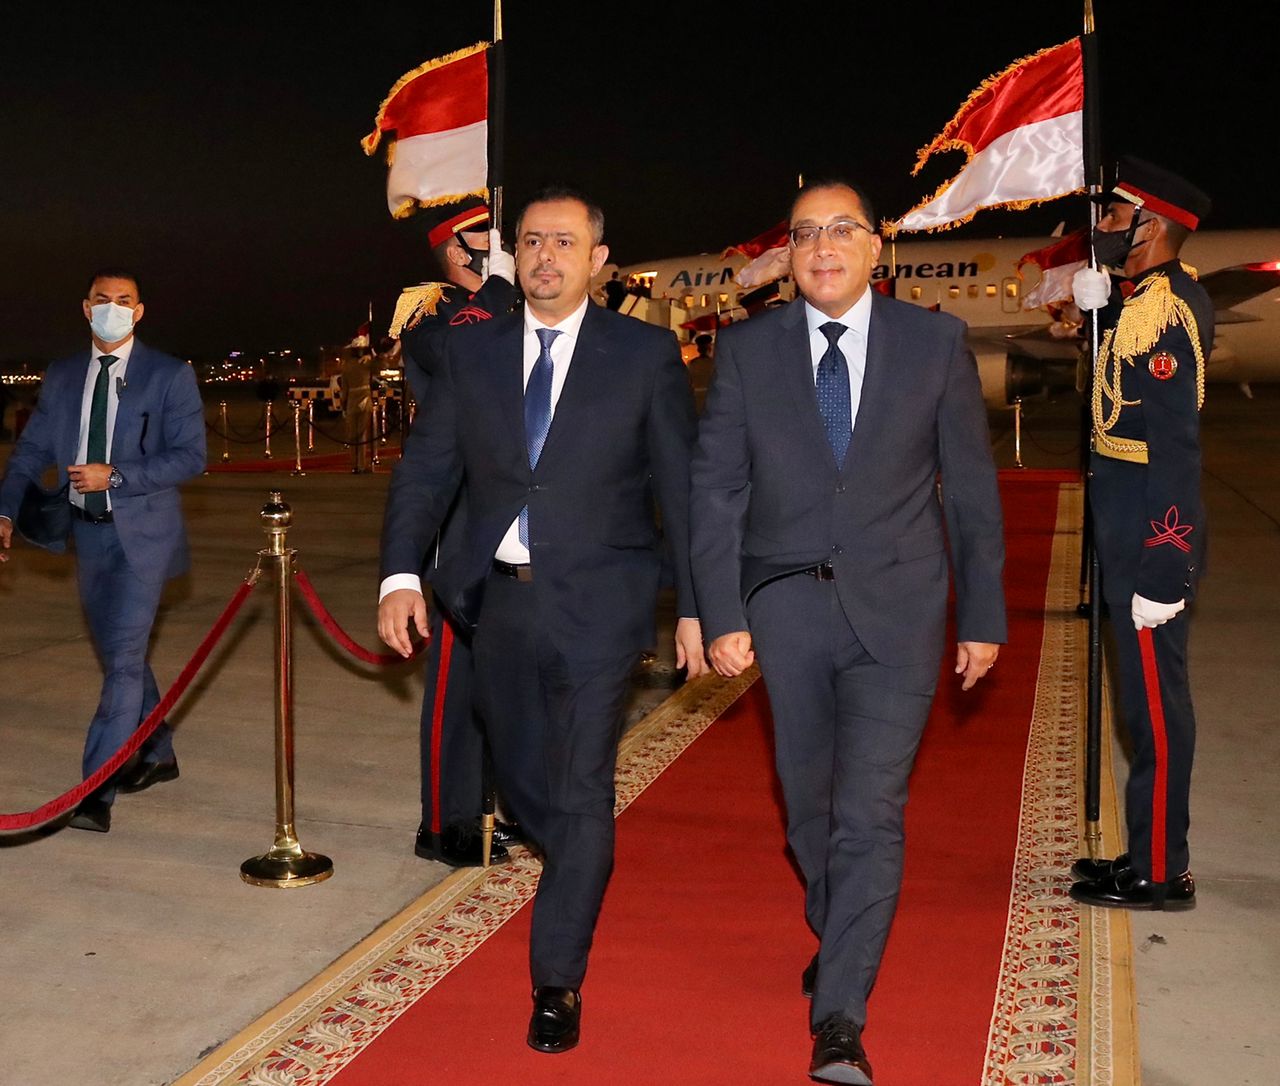 رئيس الوزراء يصل الى القاهرة في زيارة رسمية تلبية لدعوة نظيره المصري